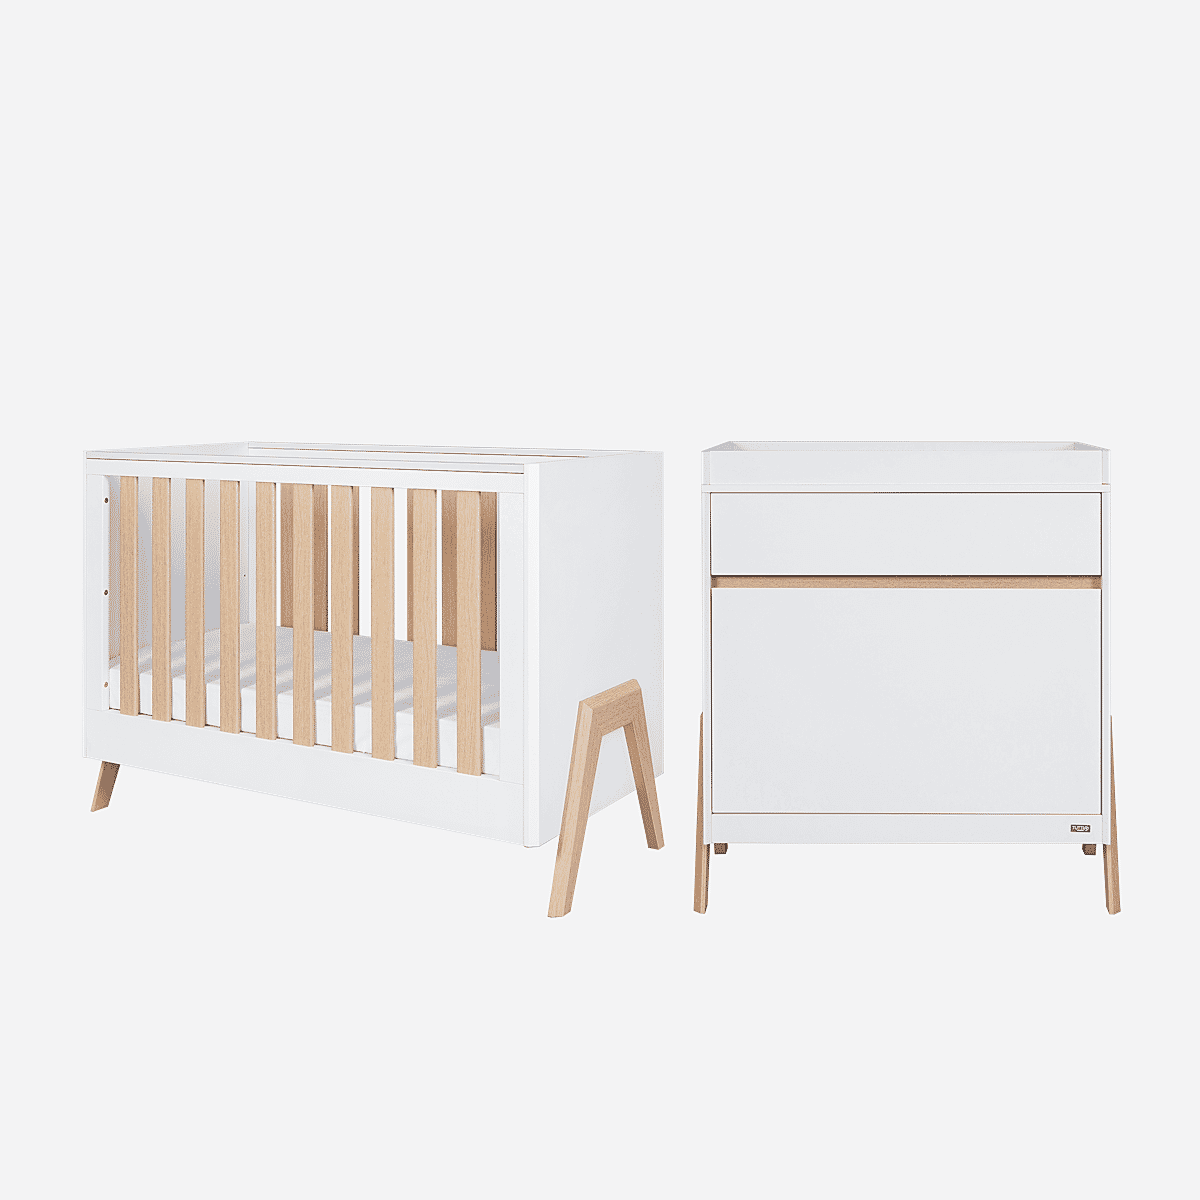 Tutti Bambini Fuori Mini 2pc Room Set - White/Light Oak - For Your Little One